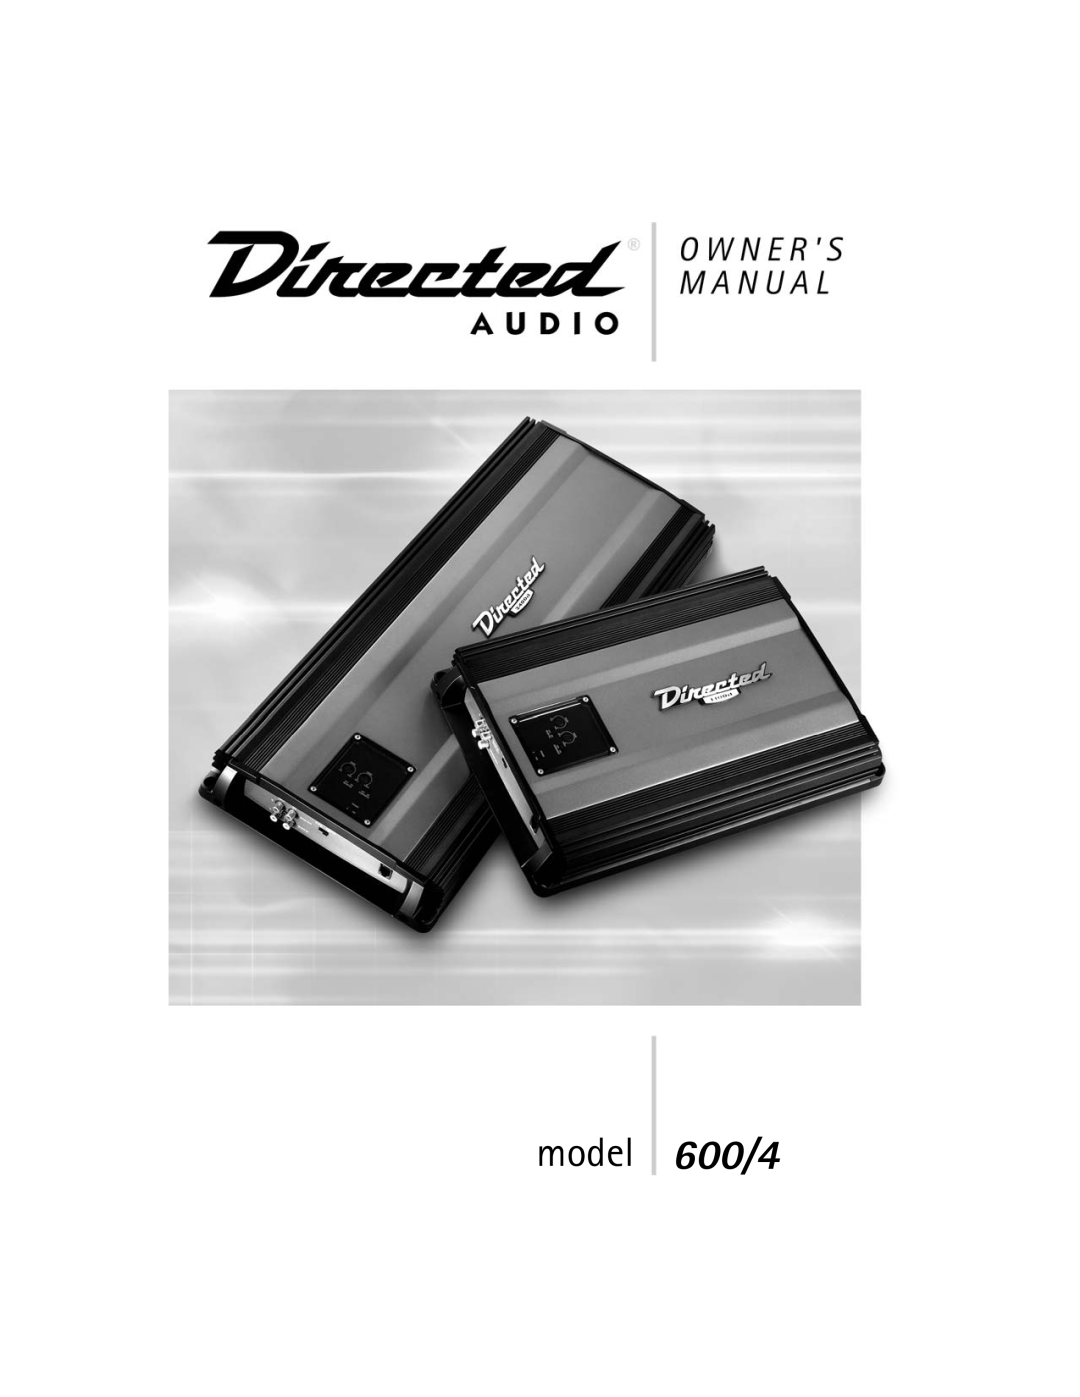 Directed Audio manual model 600/4 